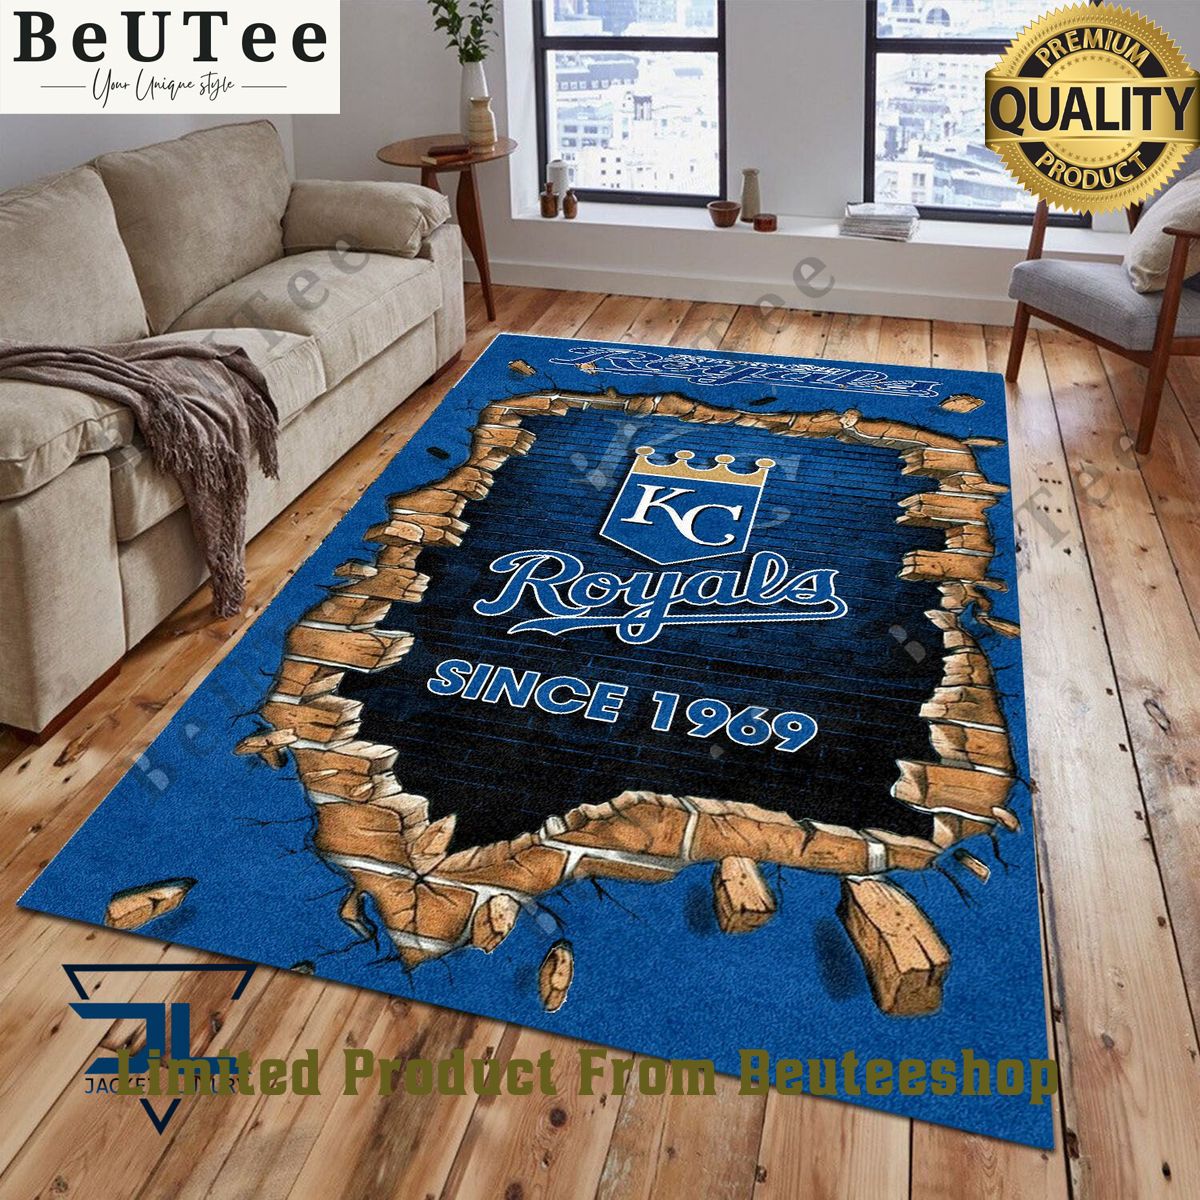 broken wall kansas city royals mlb baseball team rug carpet living room 1 nvCvy.jpg